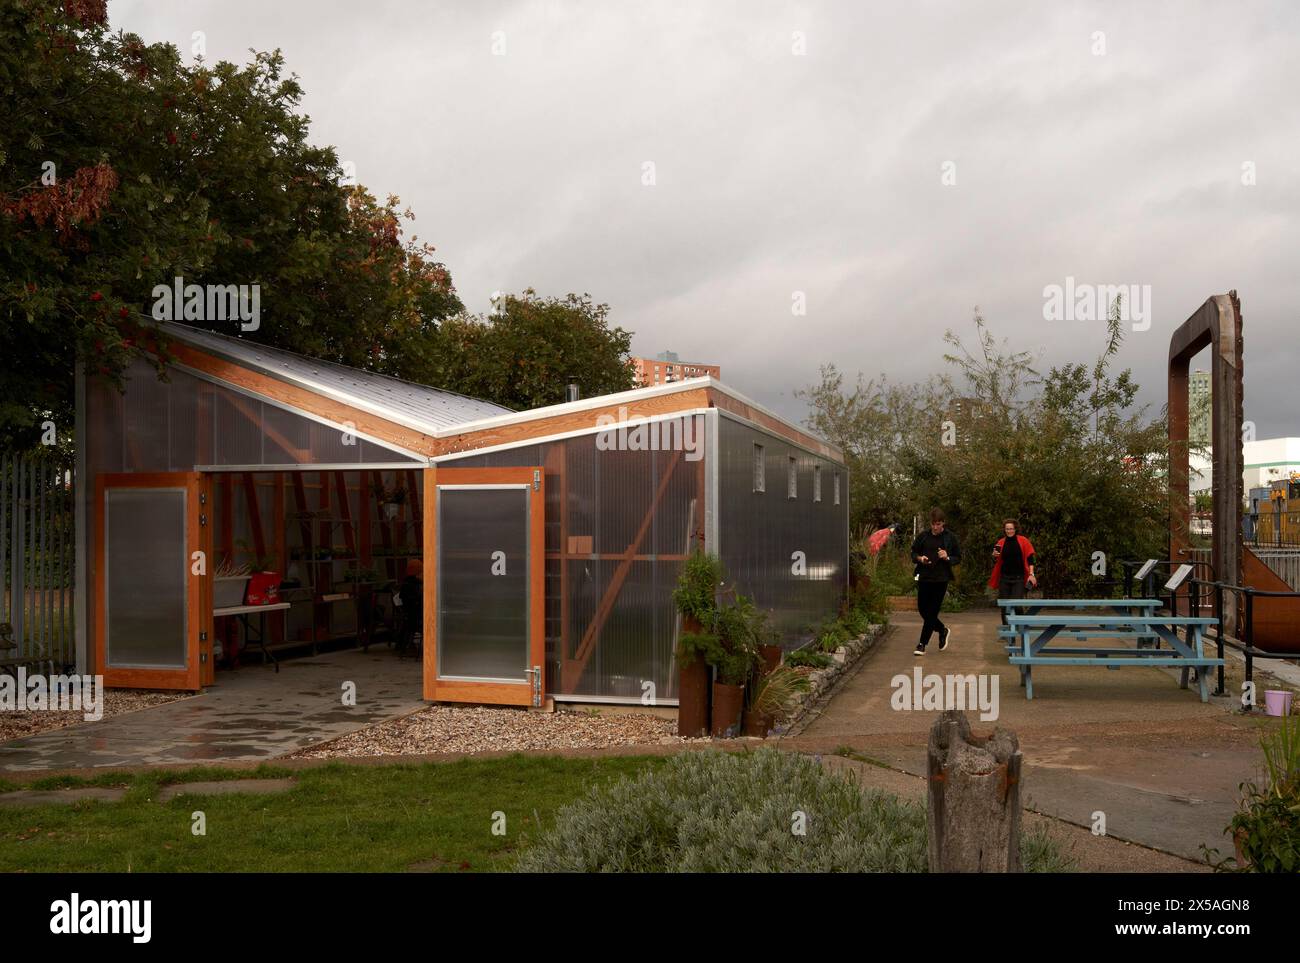 Élévation avant de la façade d'entrée translucide avec porte ouverte, les étudiants arrivant. Cody Dock - The Growing Space, Londres, Royaume-Uni. Architecte : Li Banque D'Images